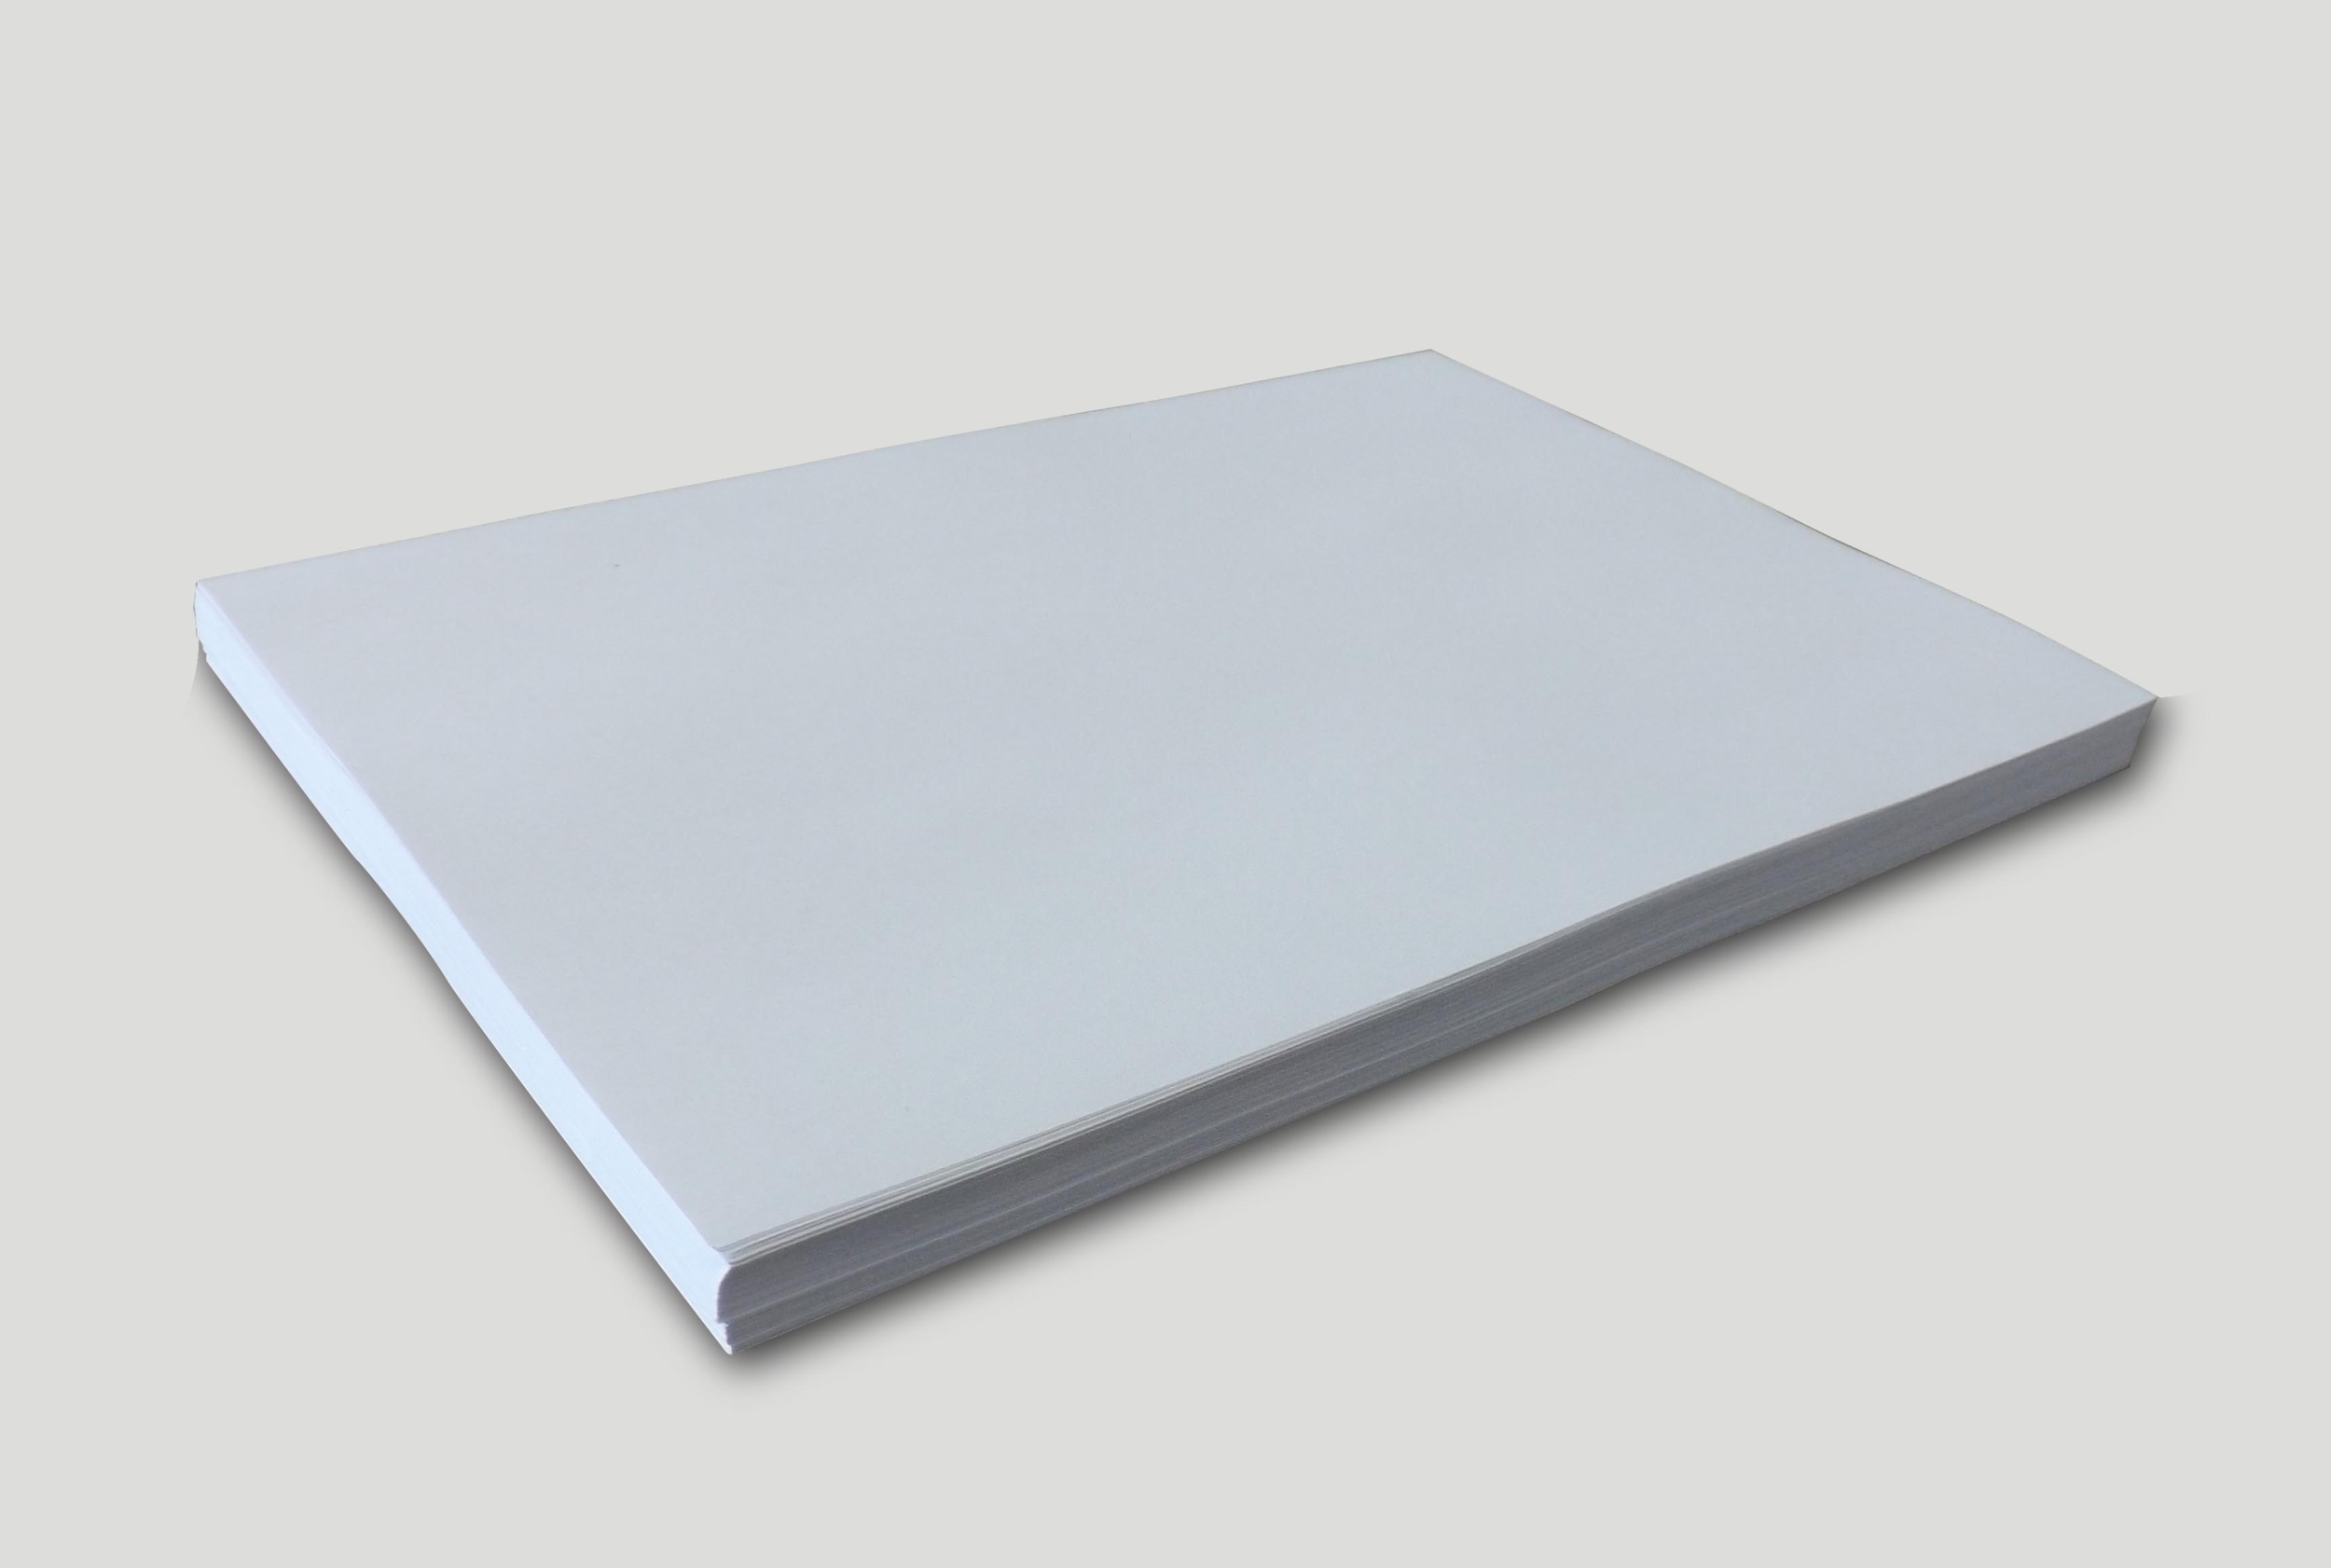 Papier blanc indéchirable A3 - 100 feuilles - Équipements